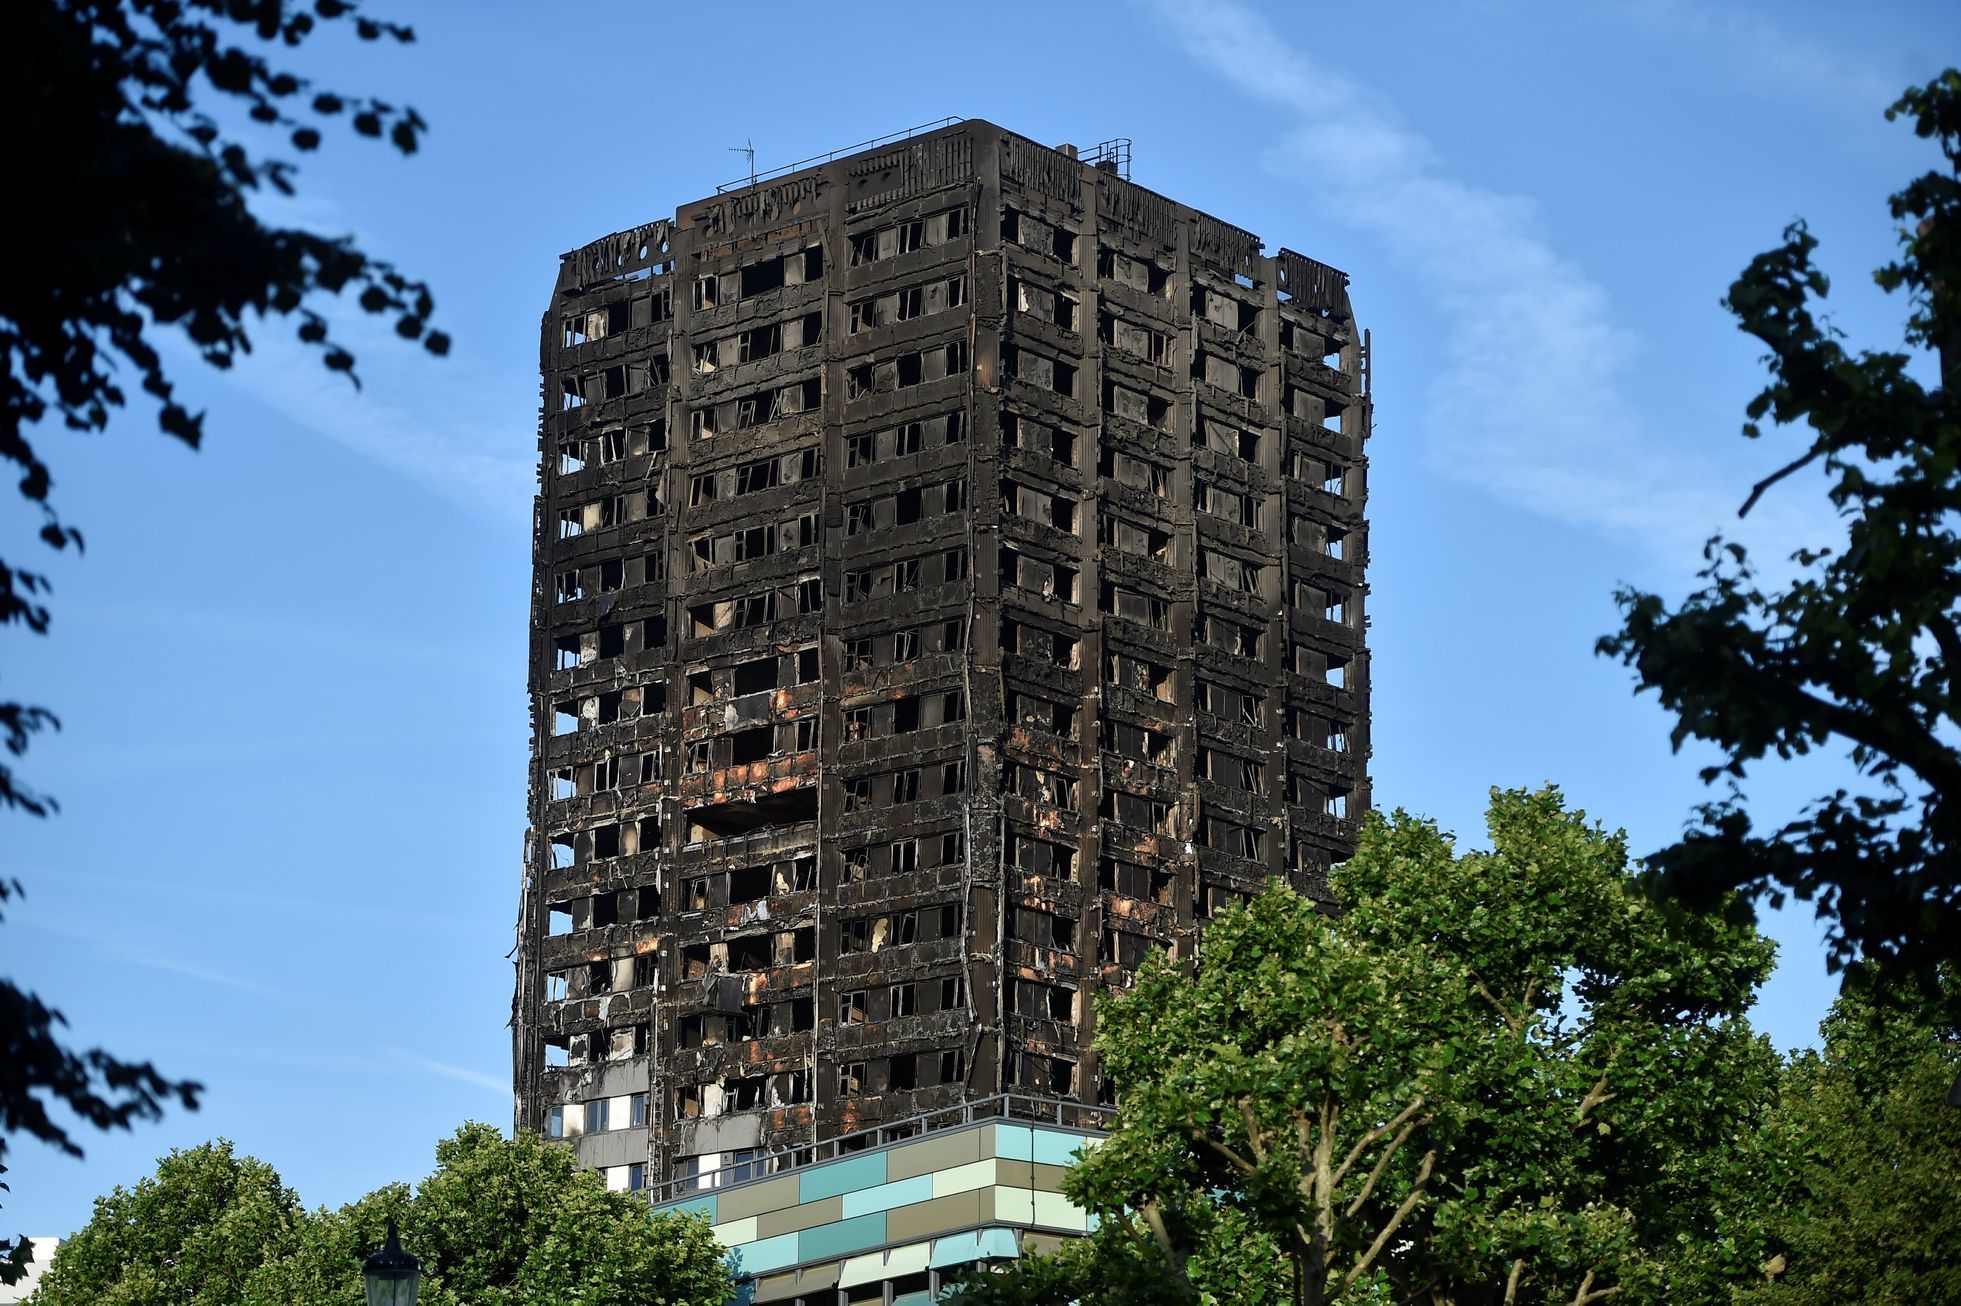 Grenfell Tower v Londýně po požáru, červen 2017